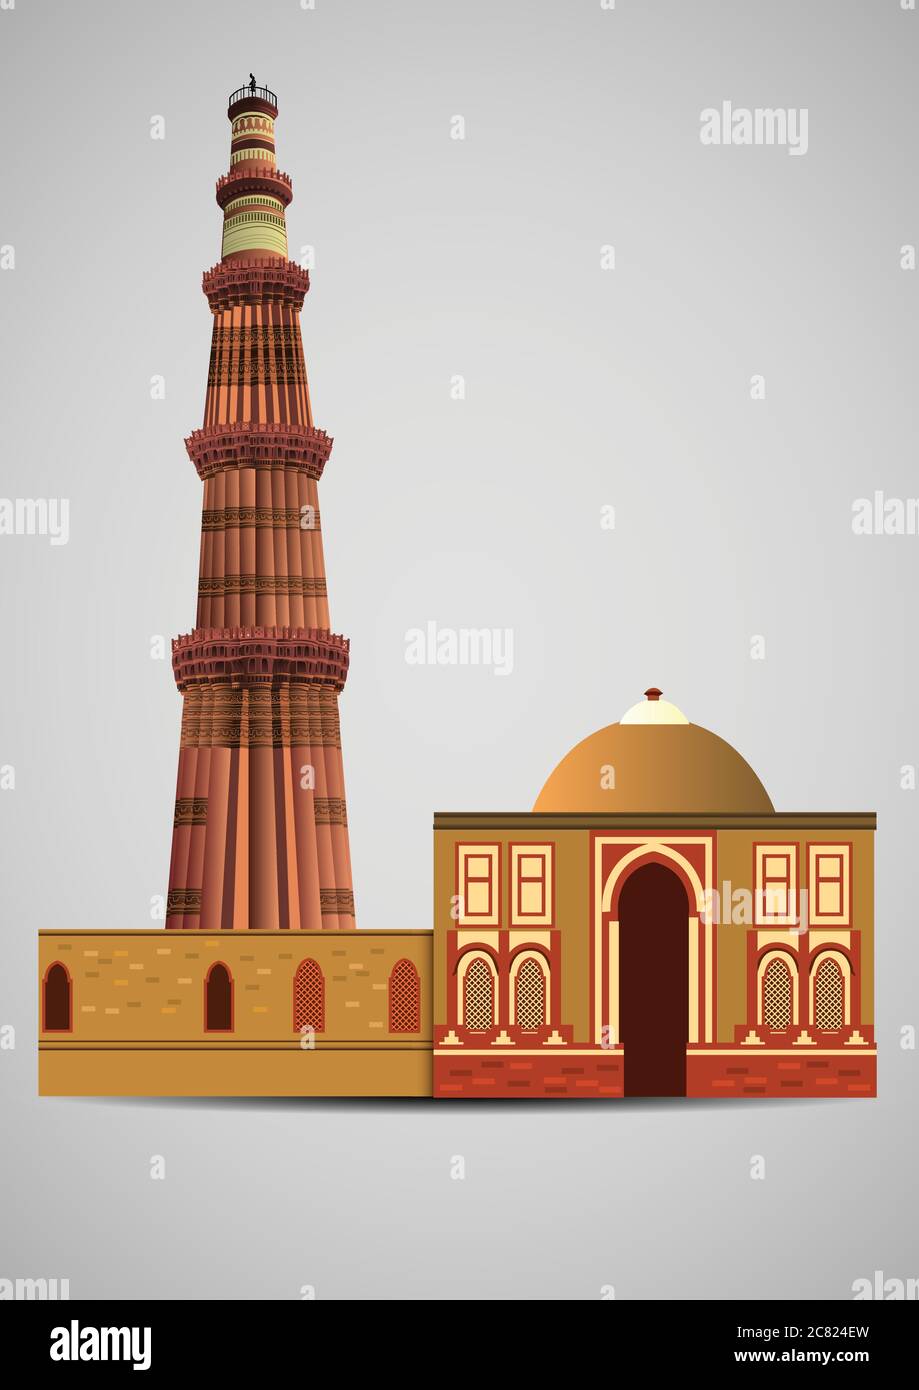 Vue de face de Qutub Minar New Delhi, Inde, le plus haut minaret de l'Inde est une tour en marbre et en grès rouge qui représente le début de la musulmane r Illustration de Vecteur